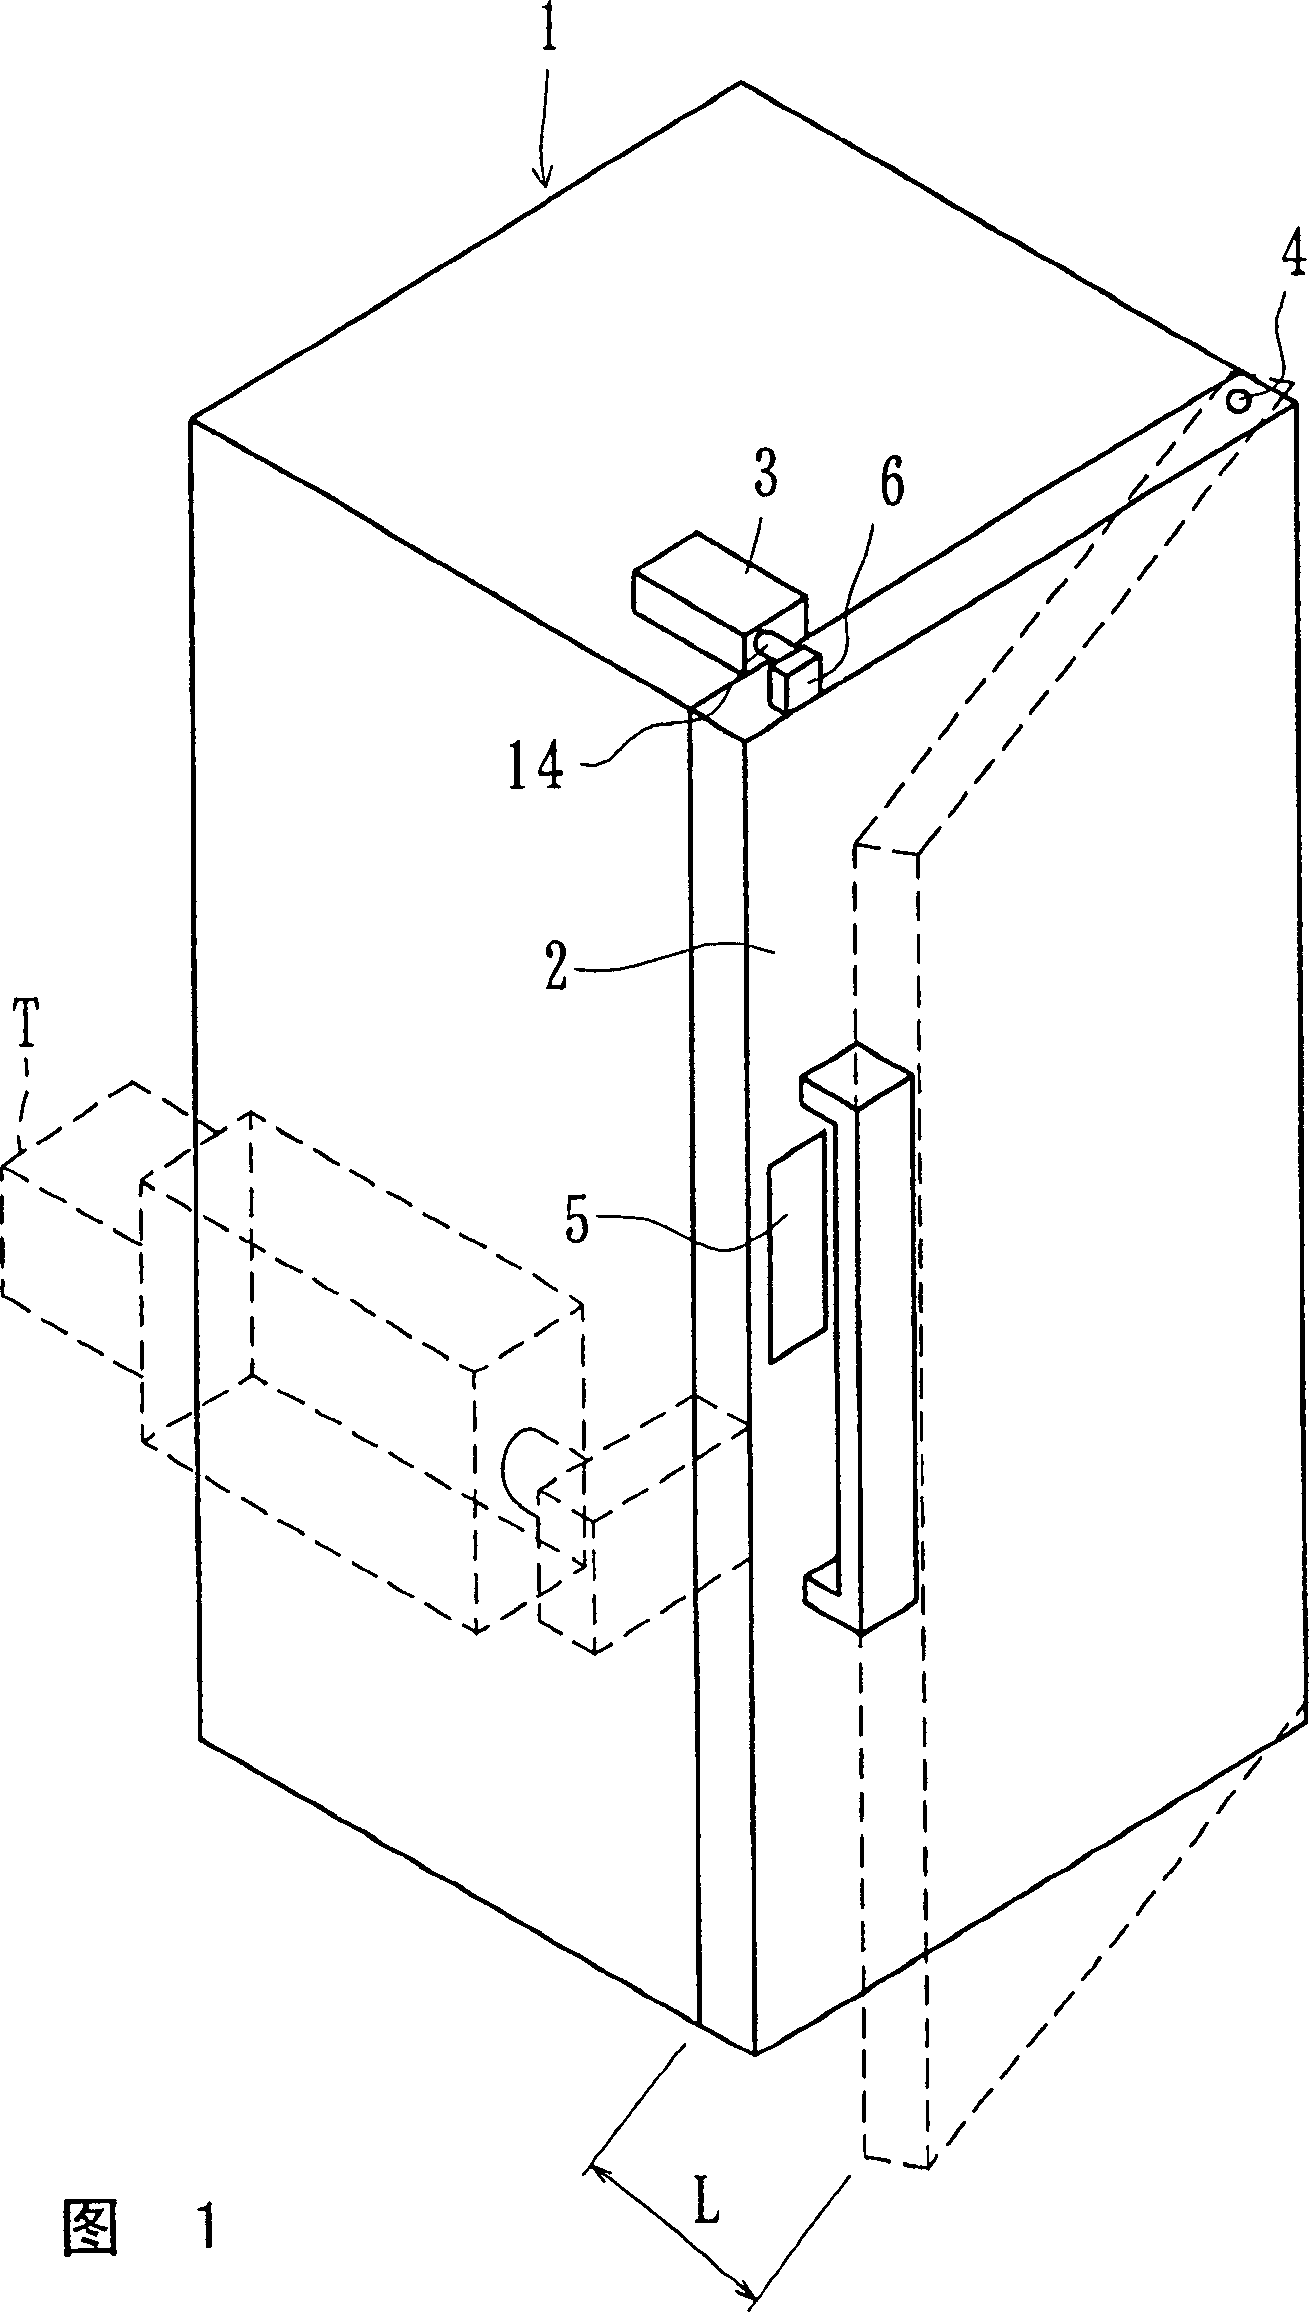 Apparatus for opening door